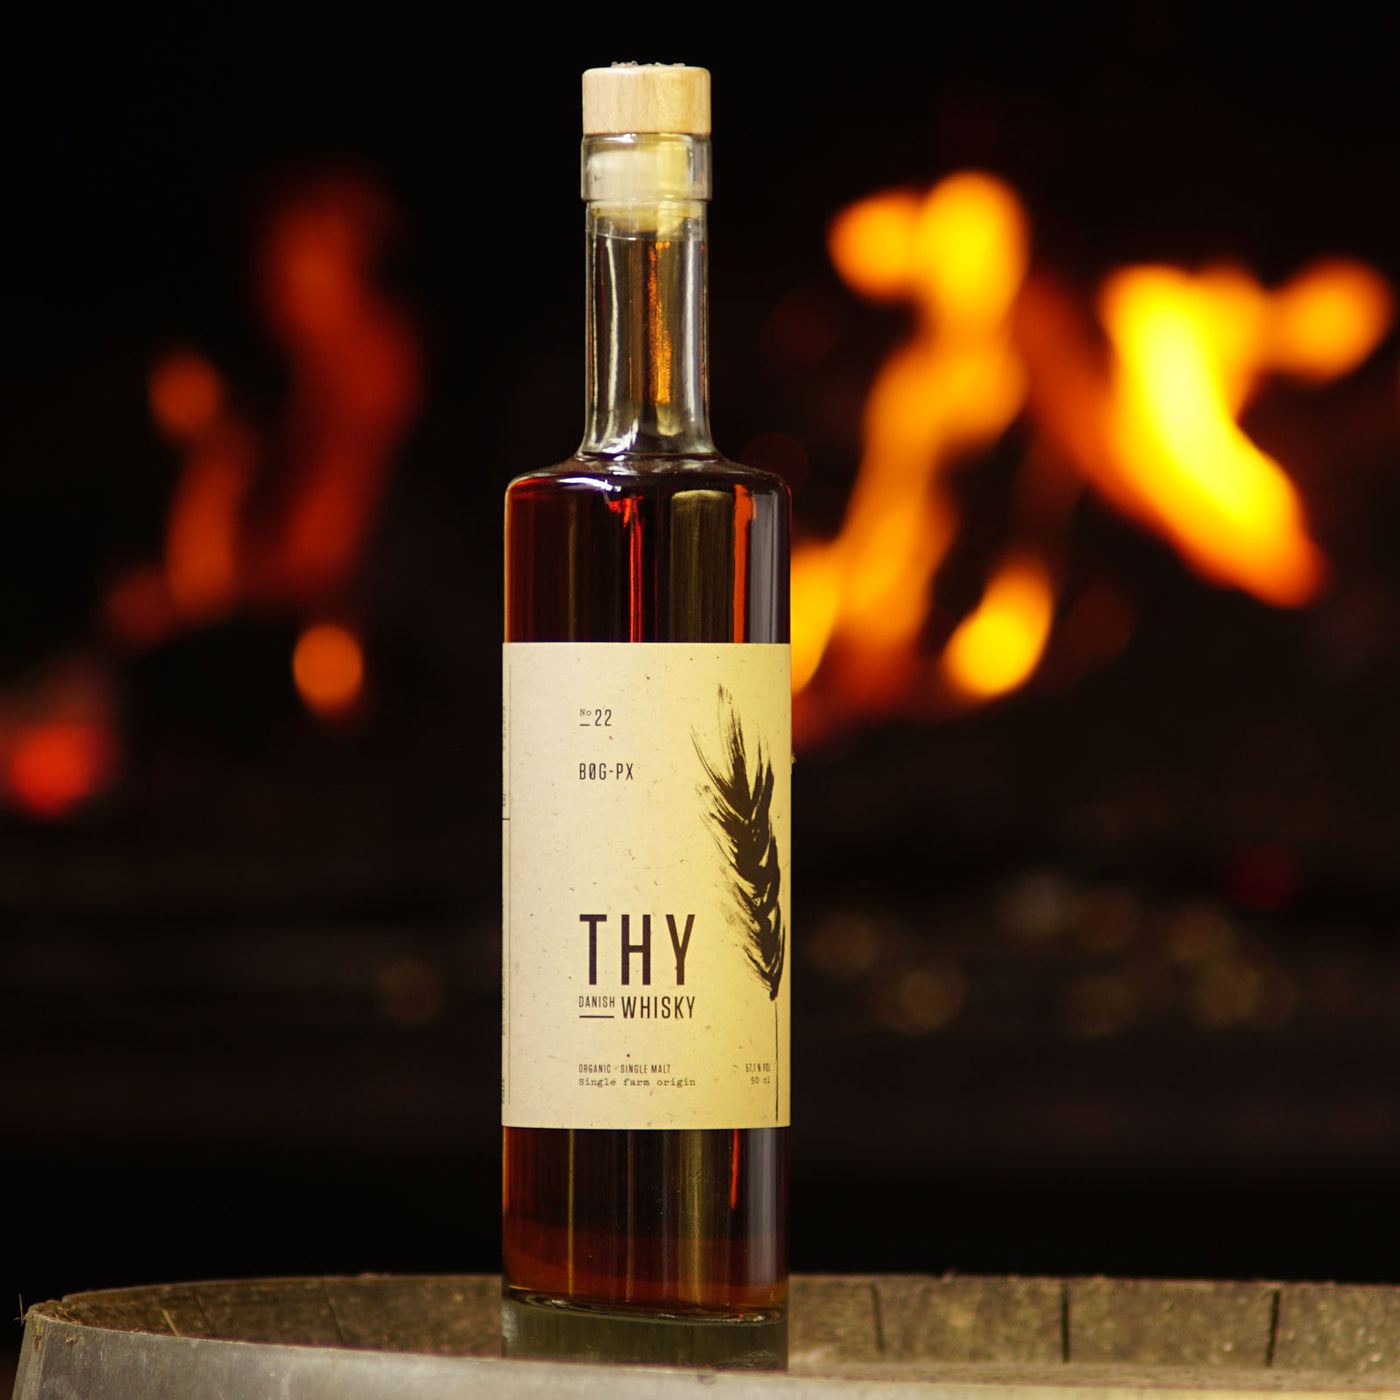 Thy Whisky no 22 - Bøg-PX